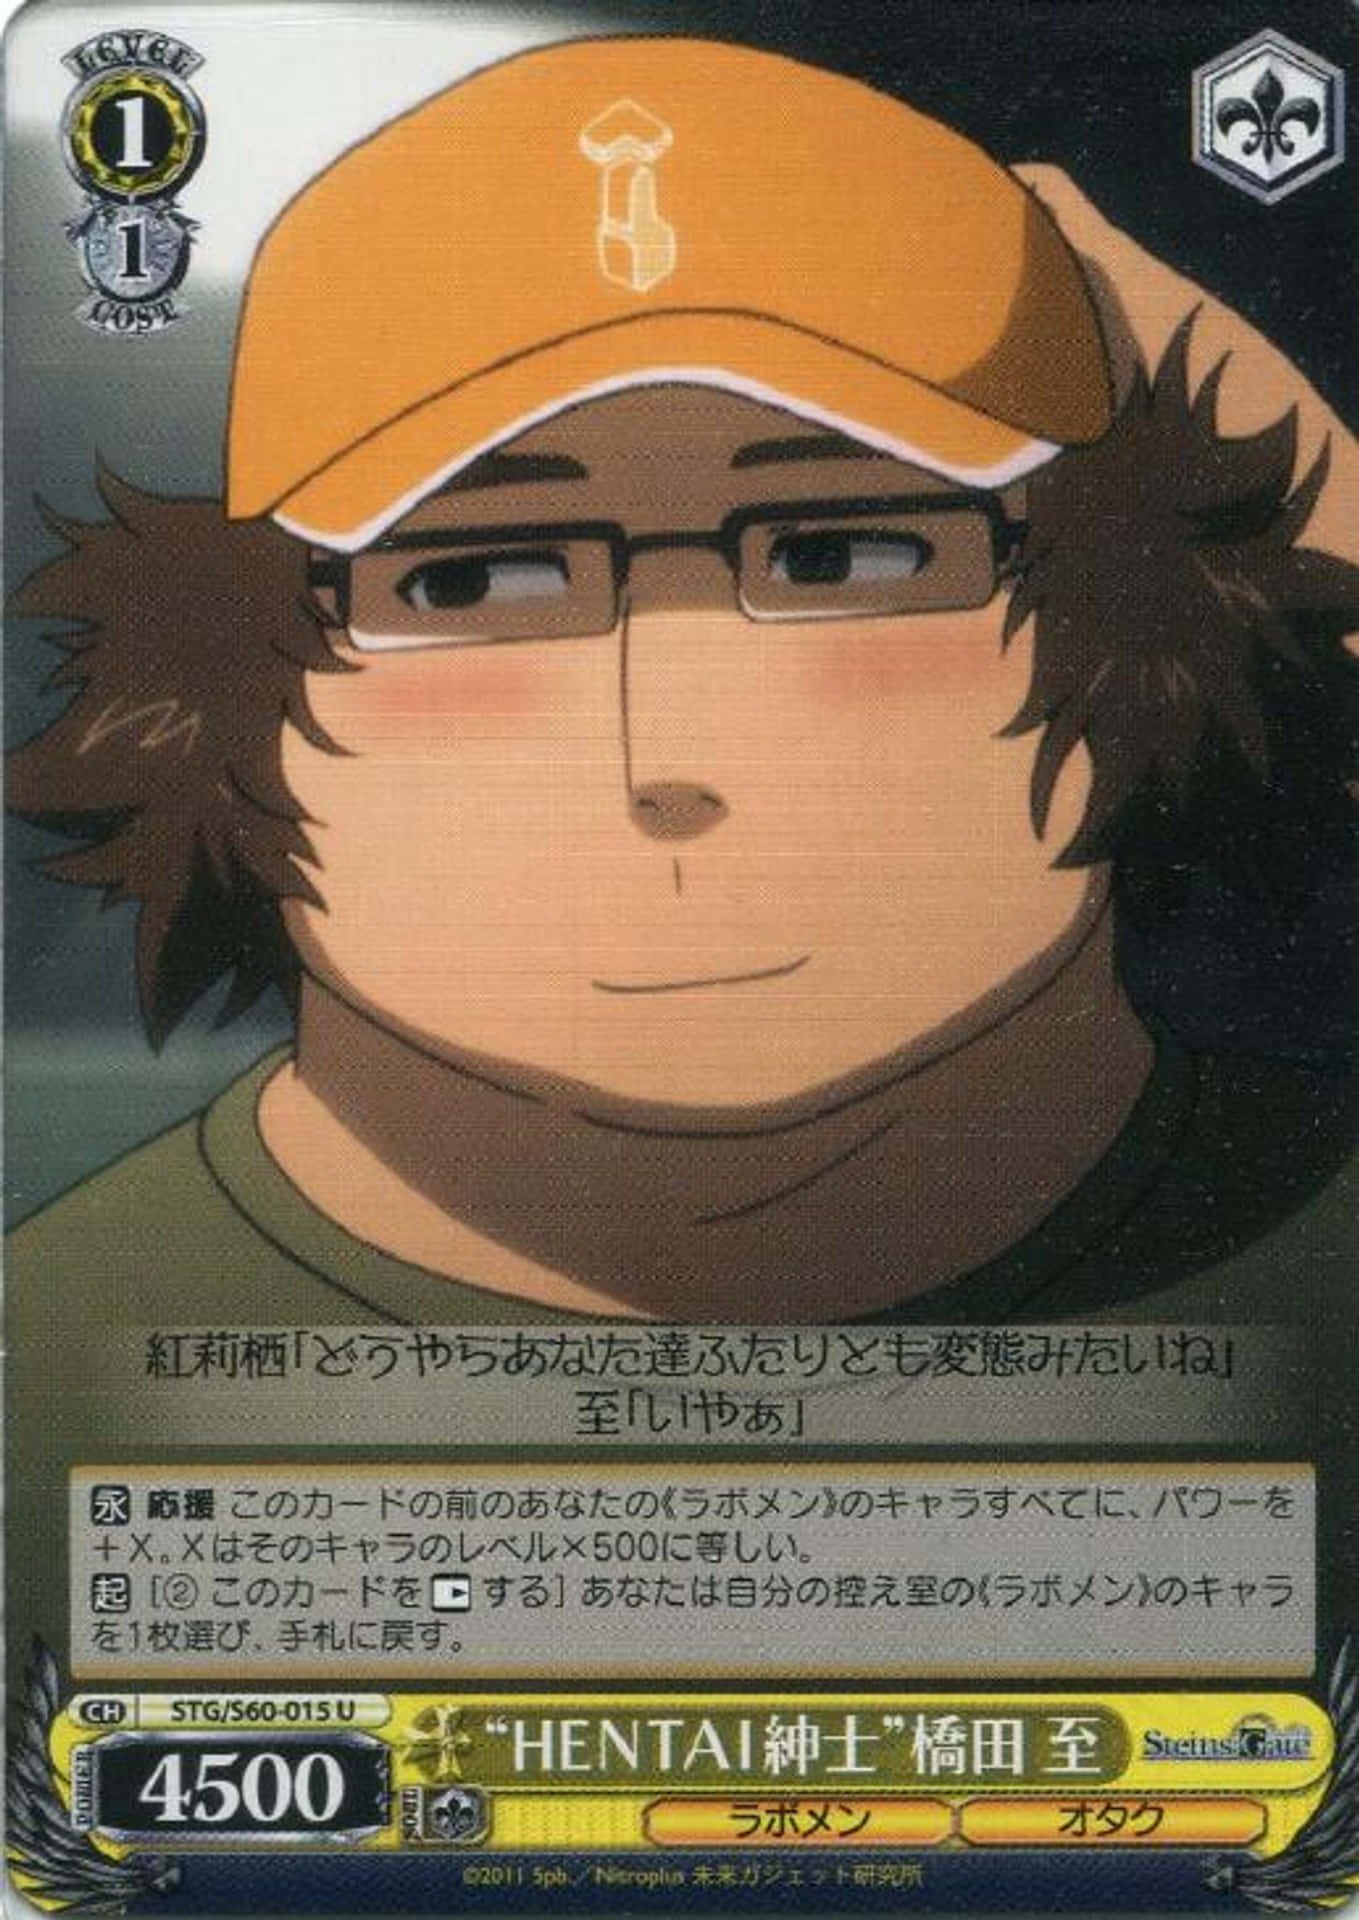 Itaruhashida: Brillante Científico Y Personaje De Steins;gate. Fondo de pantalla